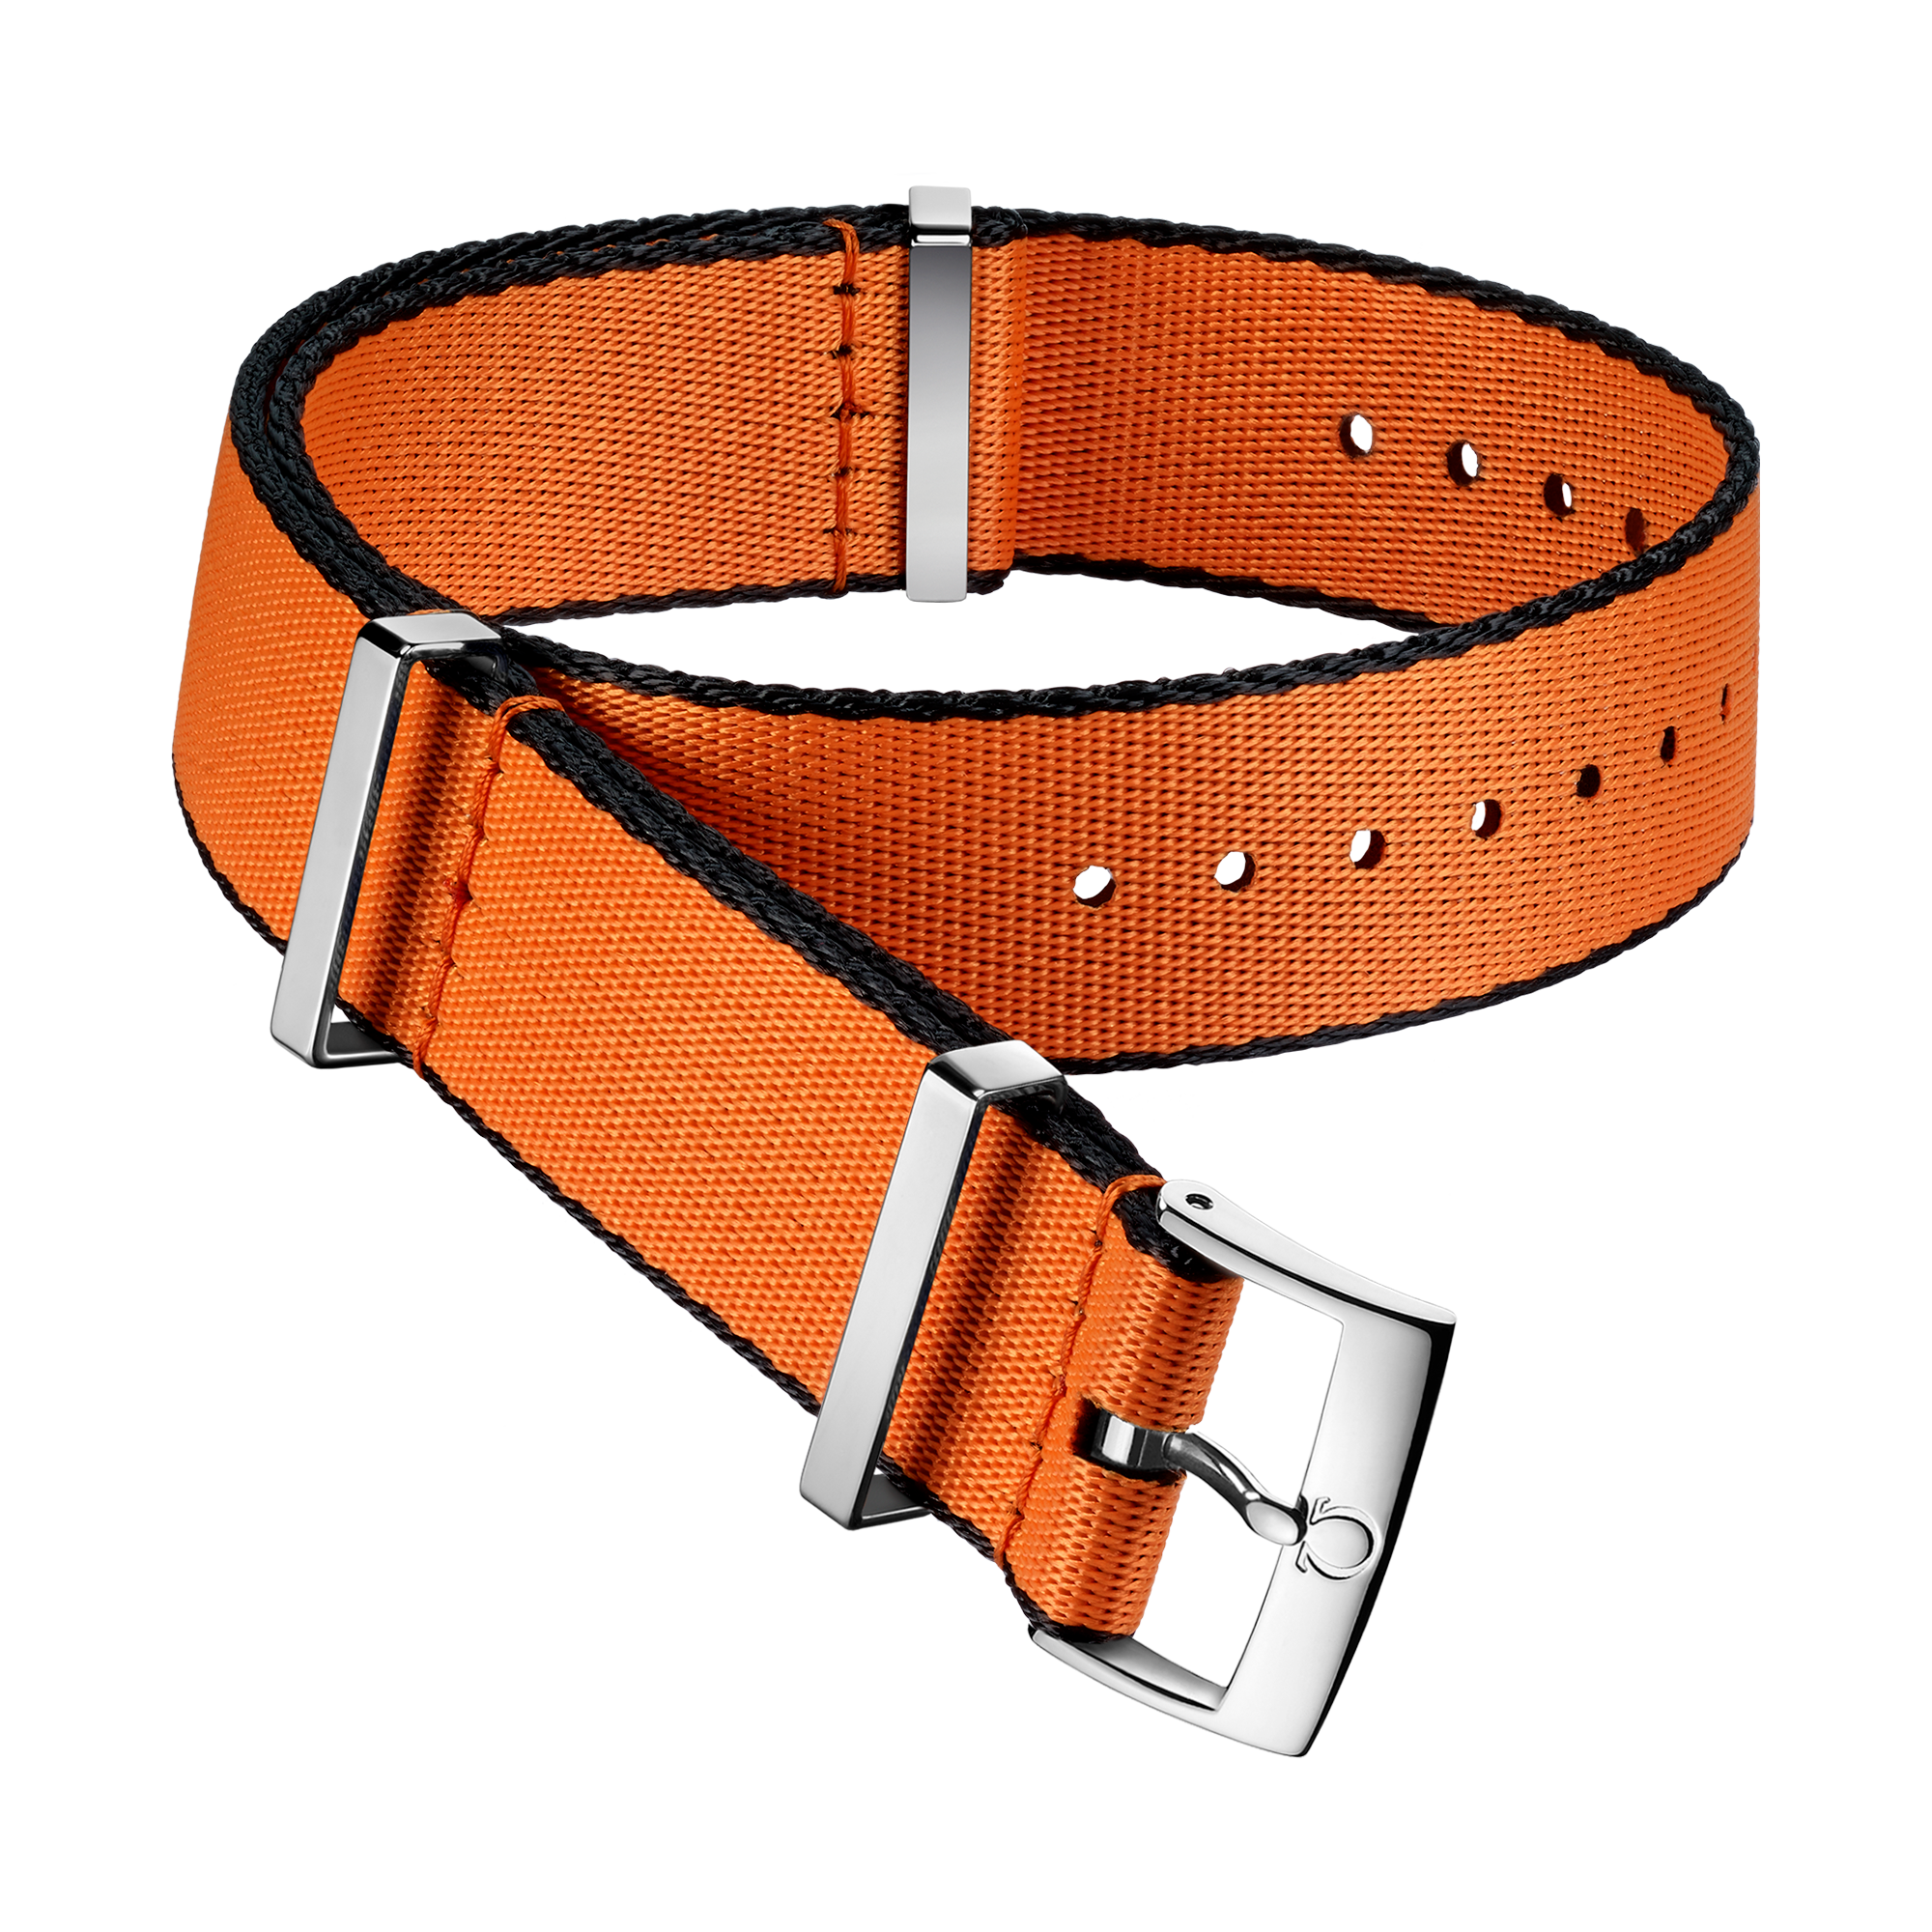 Cinturino NATO - Cinturino in poliammide arancione con bordi neri - 031CWZ010648